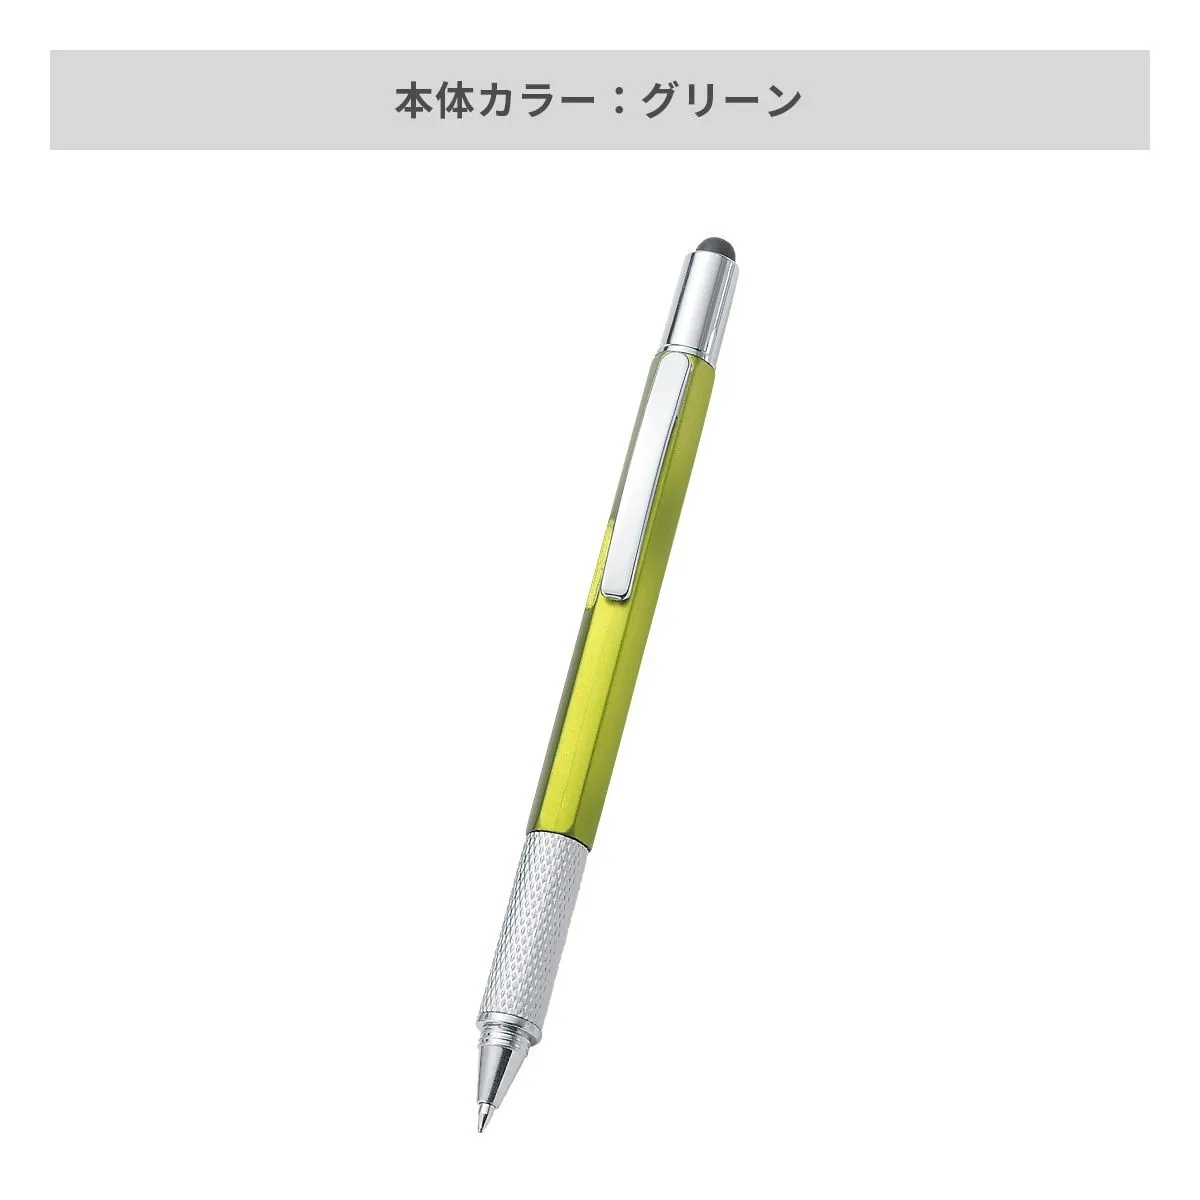 タッチペン付マルチツールペン【多機能ペン / パッド印刷】 画像4